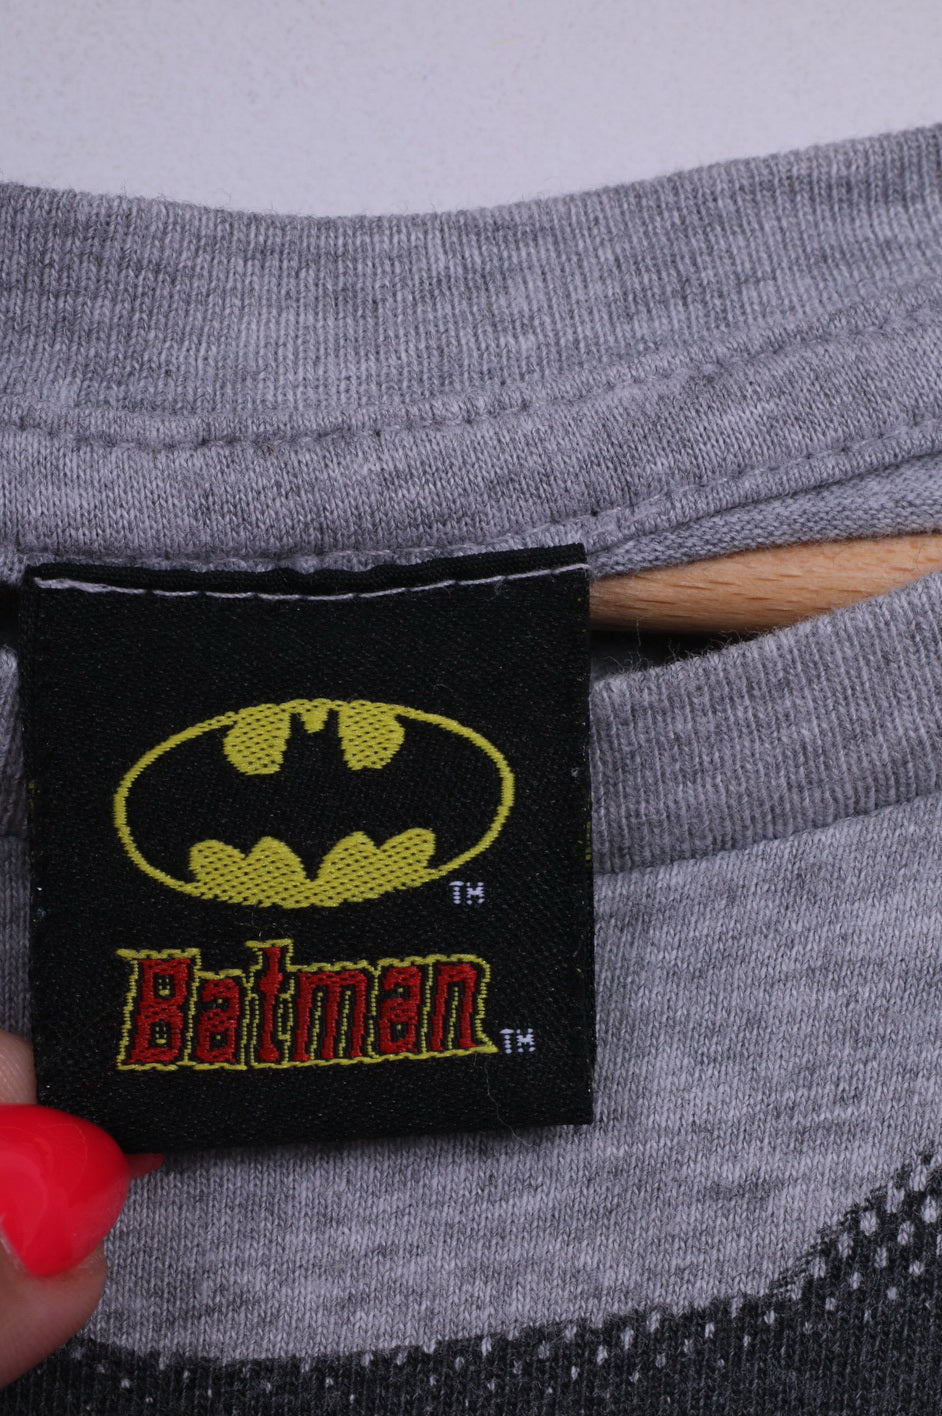 New Look Batman Mens M T-Shirt Graphic Crew Neck TM&Dc Comics S10 Cotton Grey